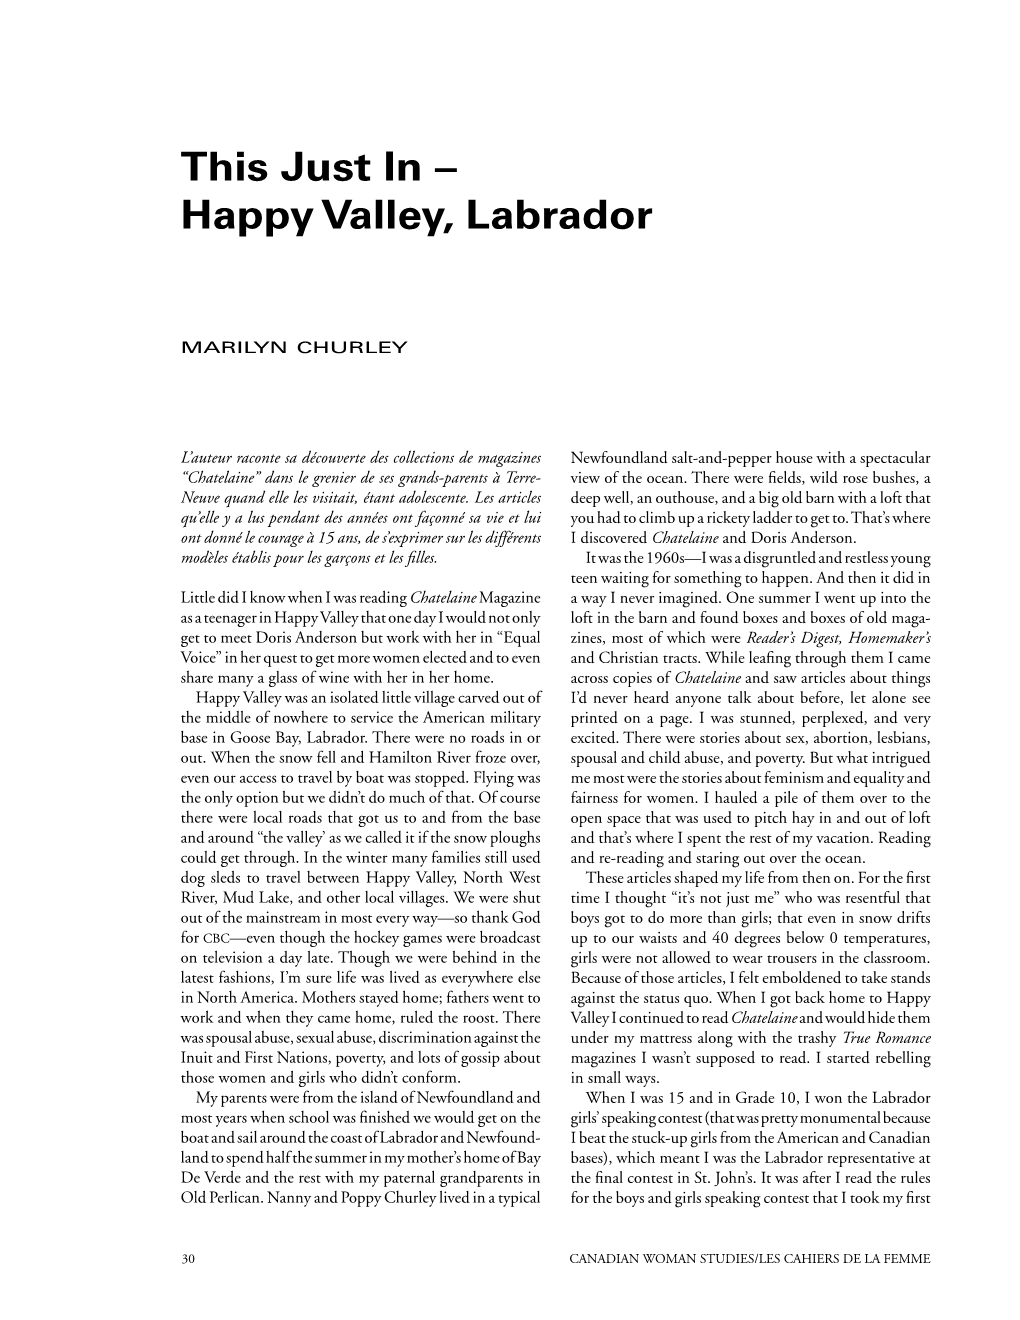 Happy Valley, Labrador